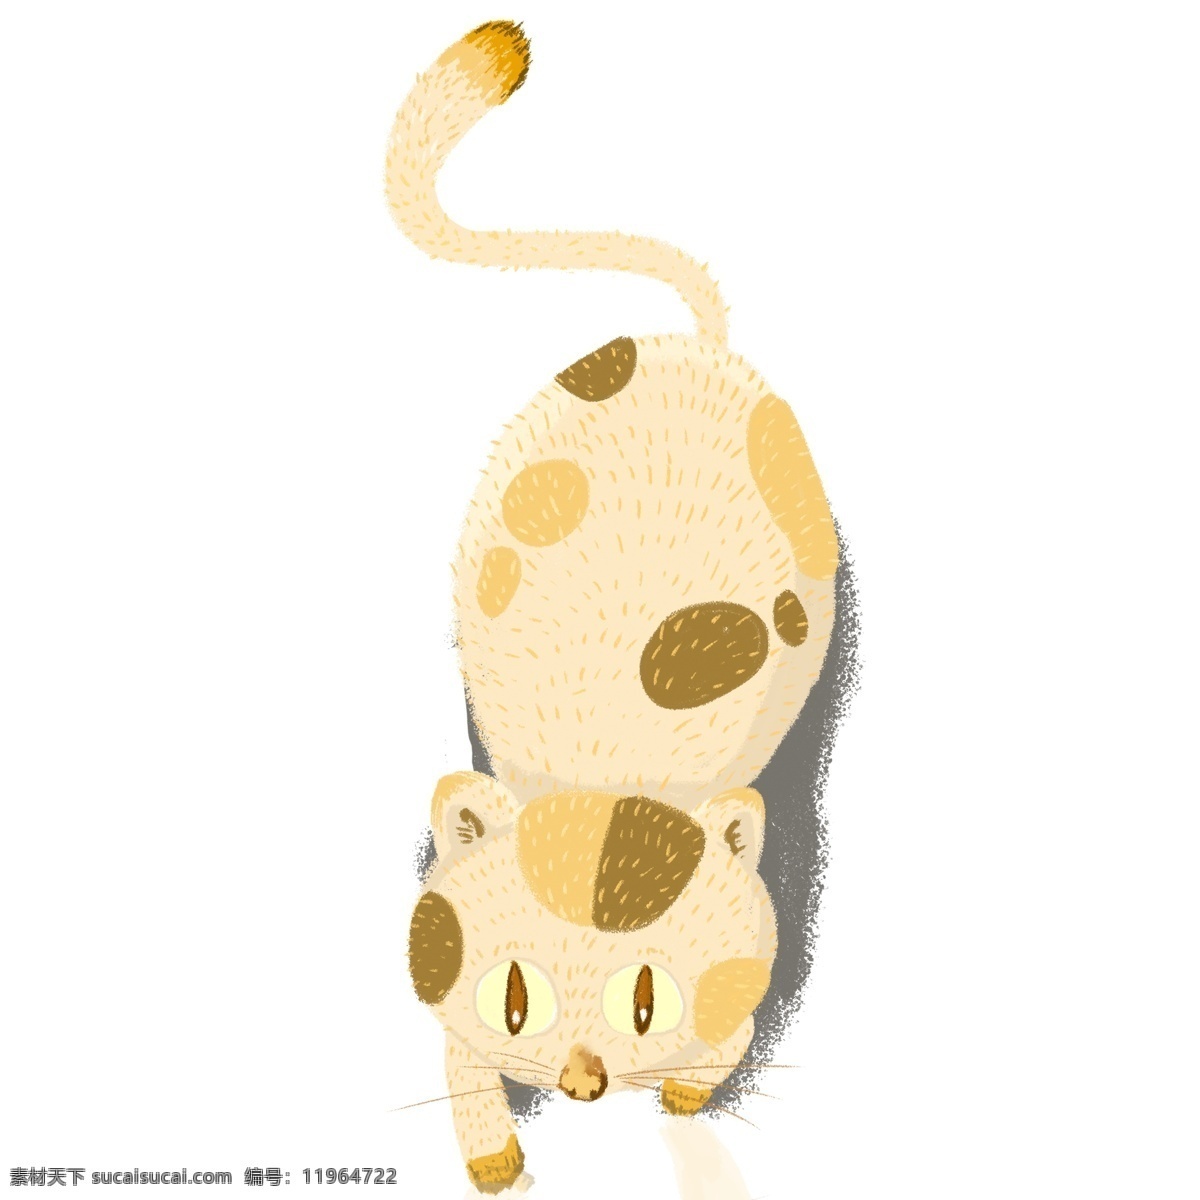 呆 萌 黄色 花纹 猫咪 呆萌 动物 小猫 卡通 彩色 小清新 创意 手绘 绘画元素 现代 简约 装饰 图案